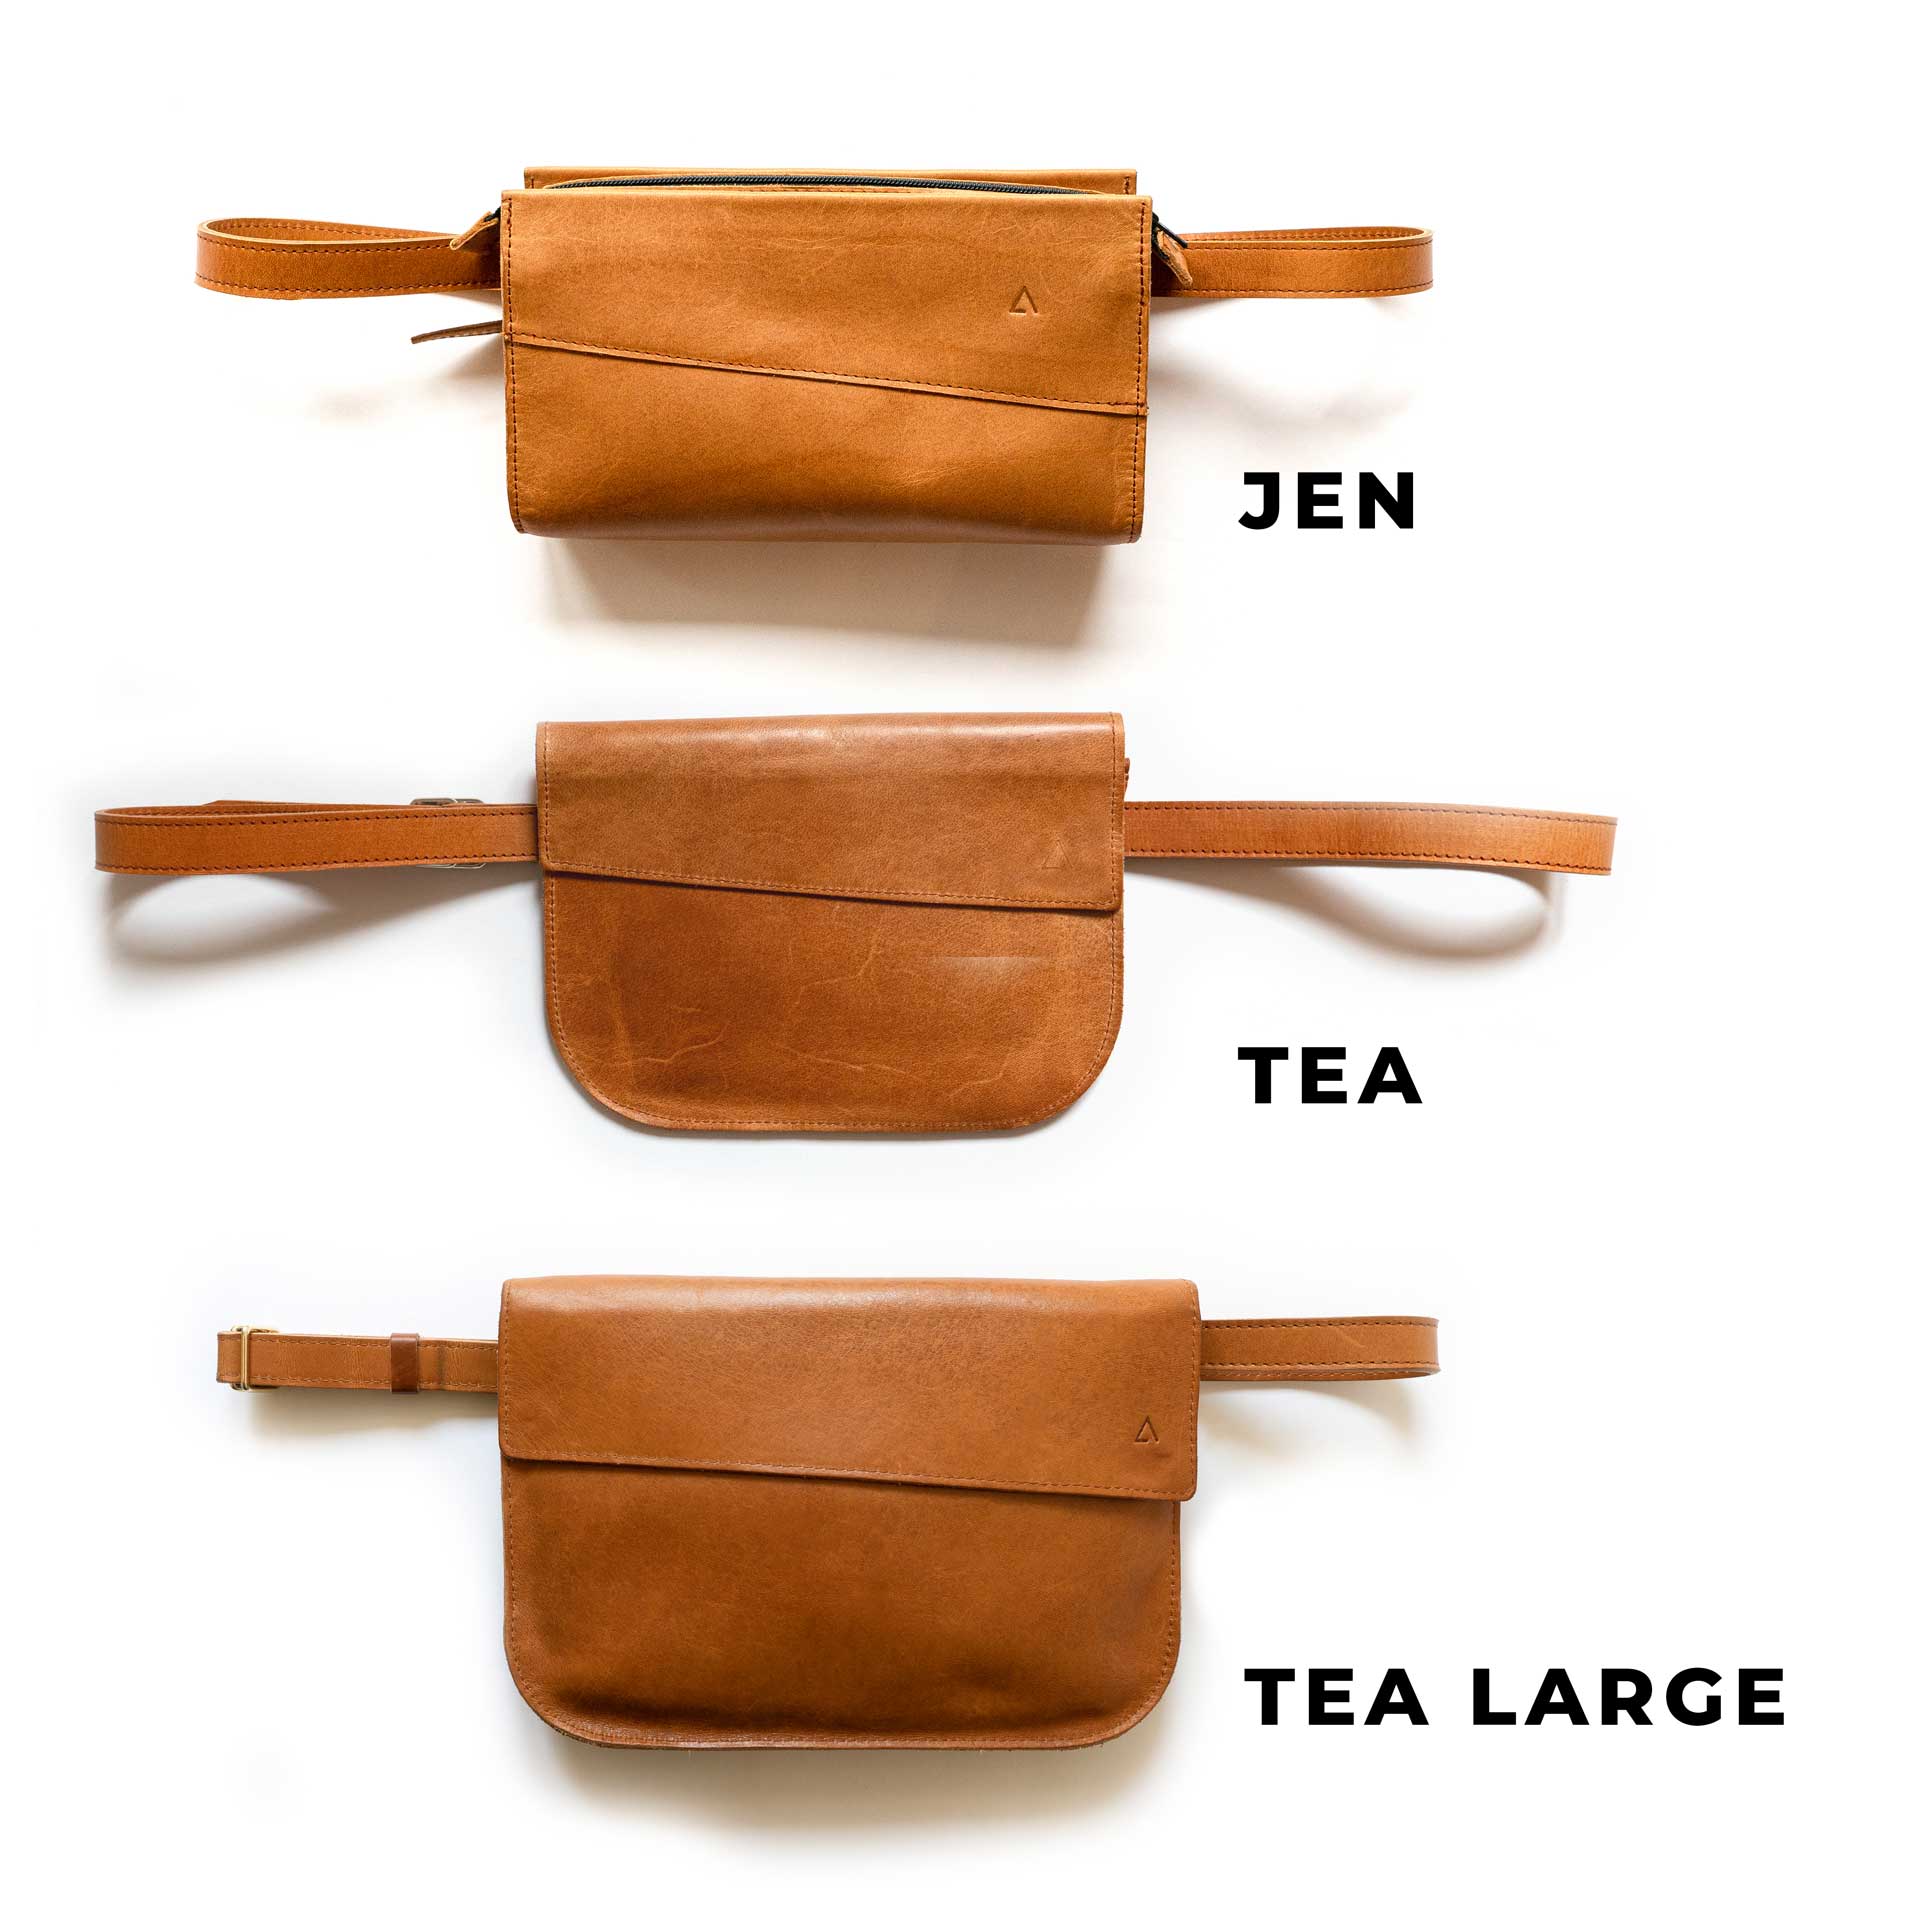 JEN bietet im Vergleich zu unseren eher flachen Modellen TEA und TEA Large mehr Tiefe, sodass sie trotz ihrer kleinen Größe über etwas mehr Stauraum verfügt.